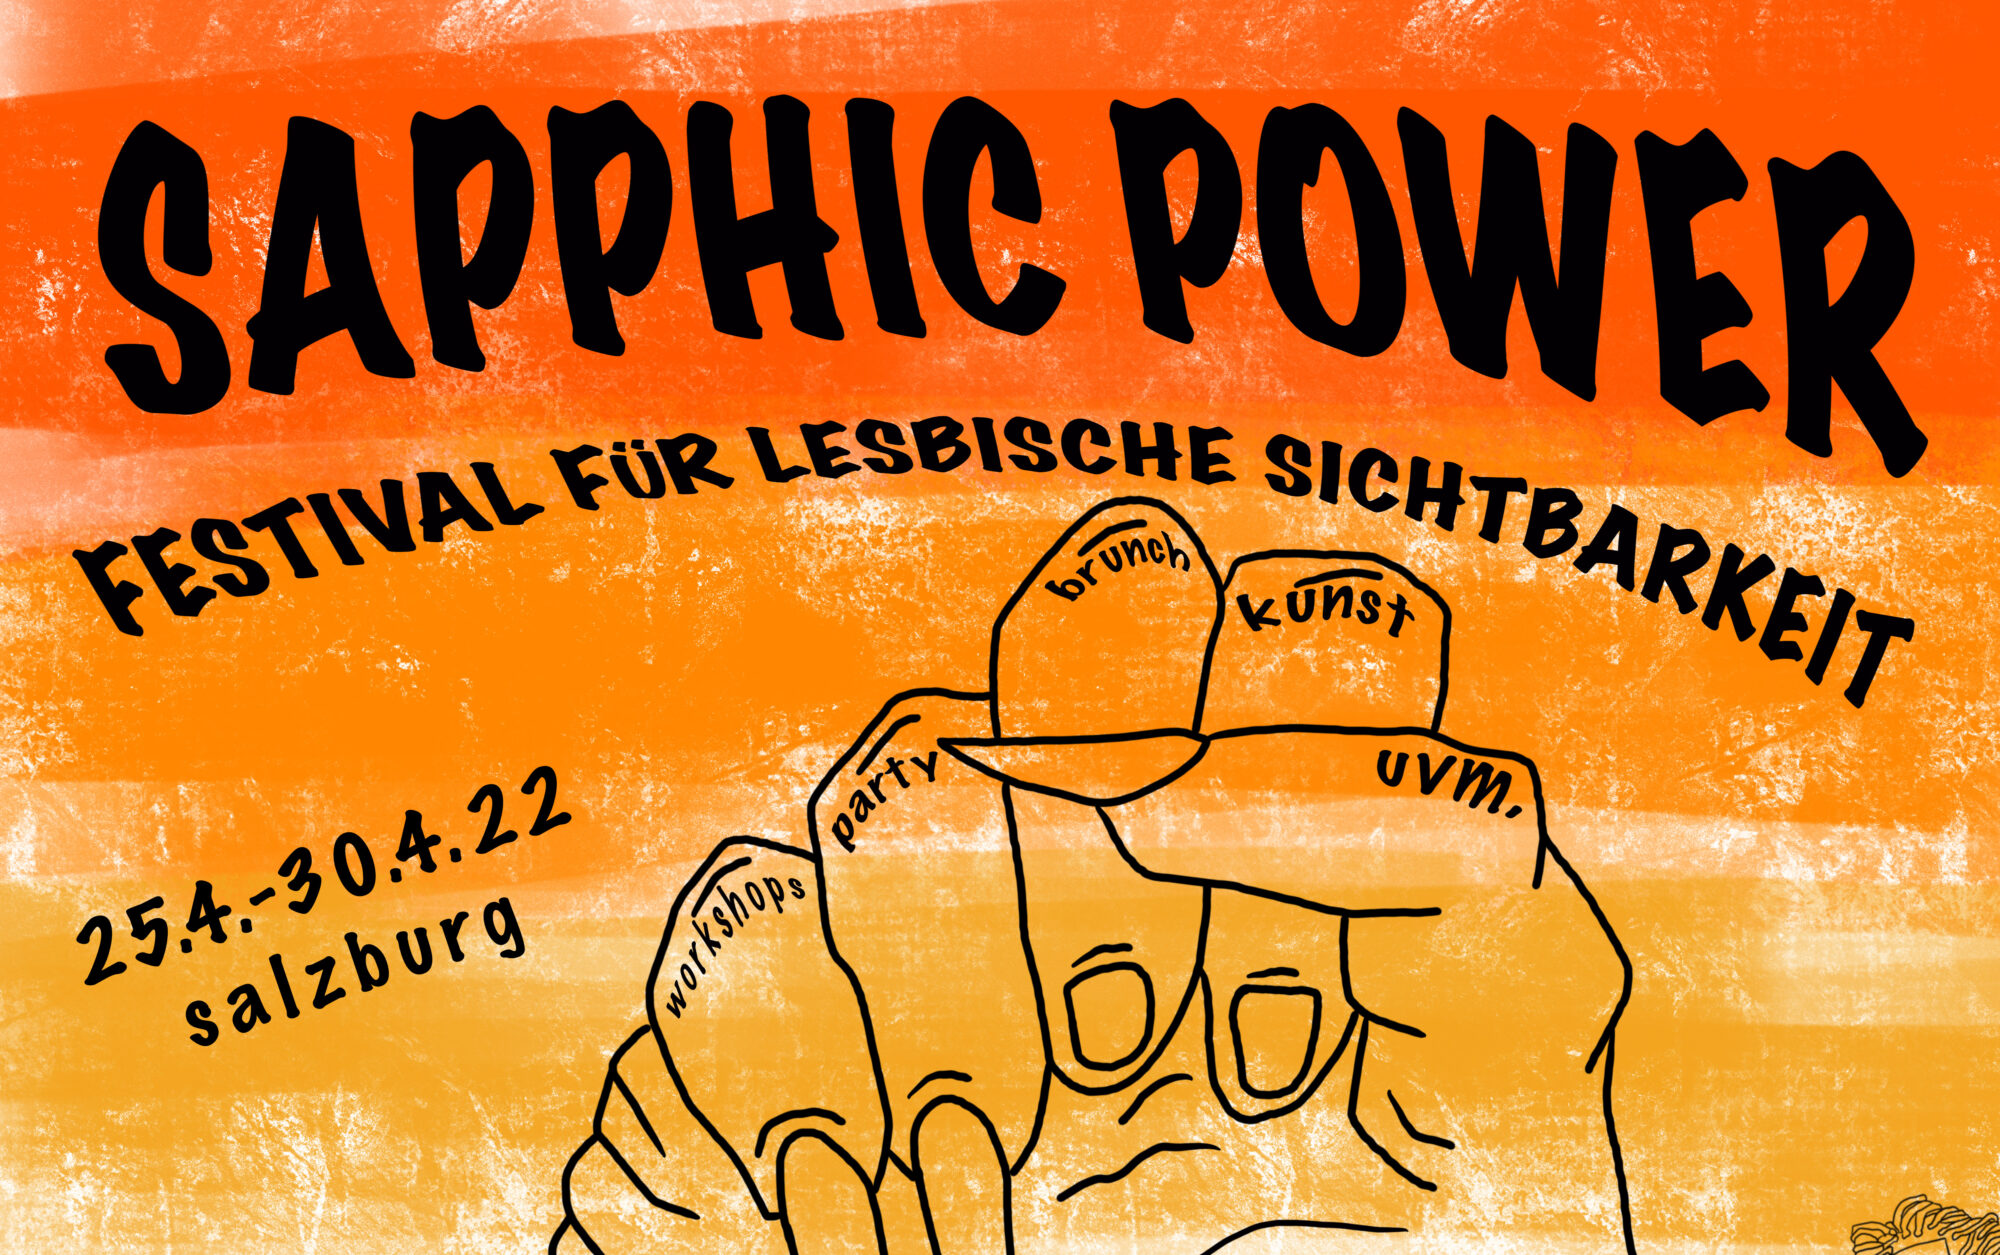 Plakat SAPPHIC POWER (c) ÖH-Feministisches Referat/ Referat für Genderfragen und LGBTQIA+